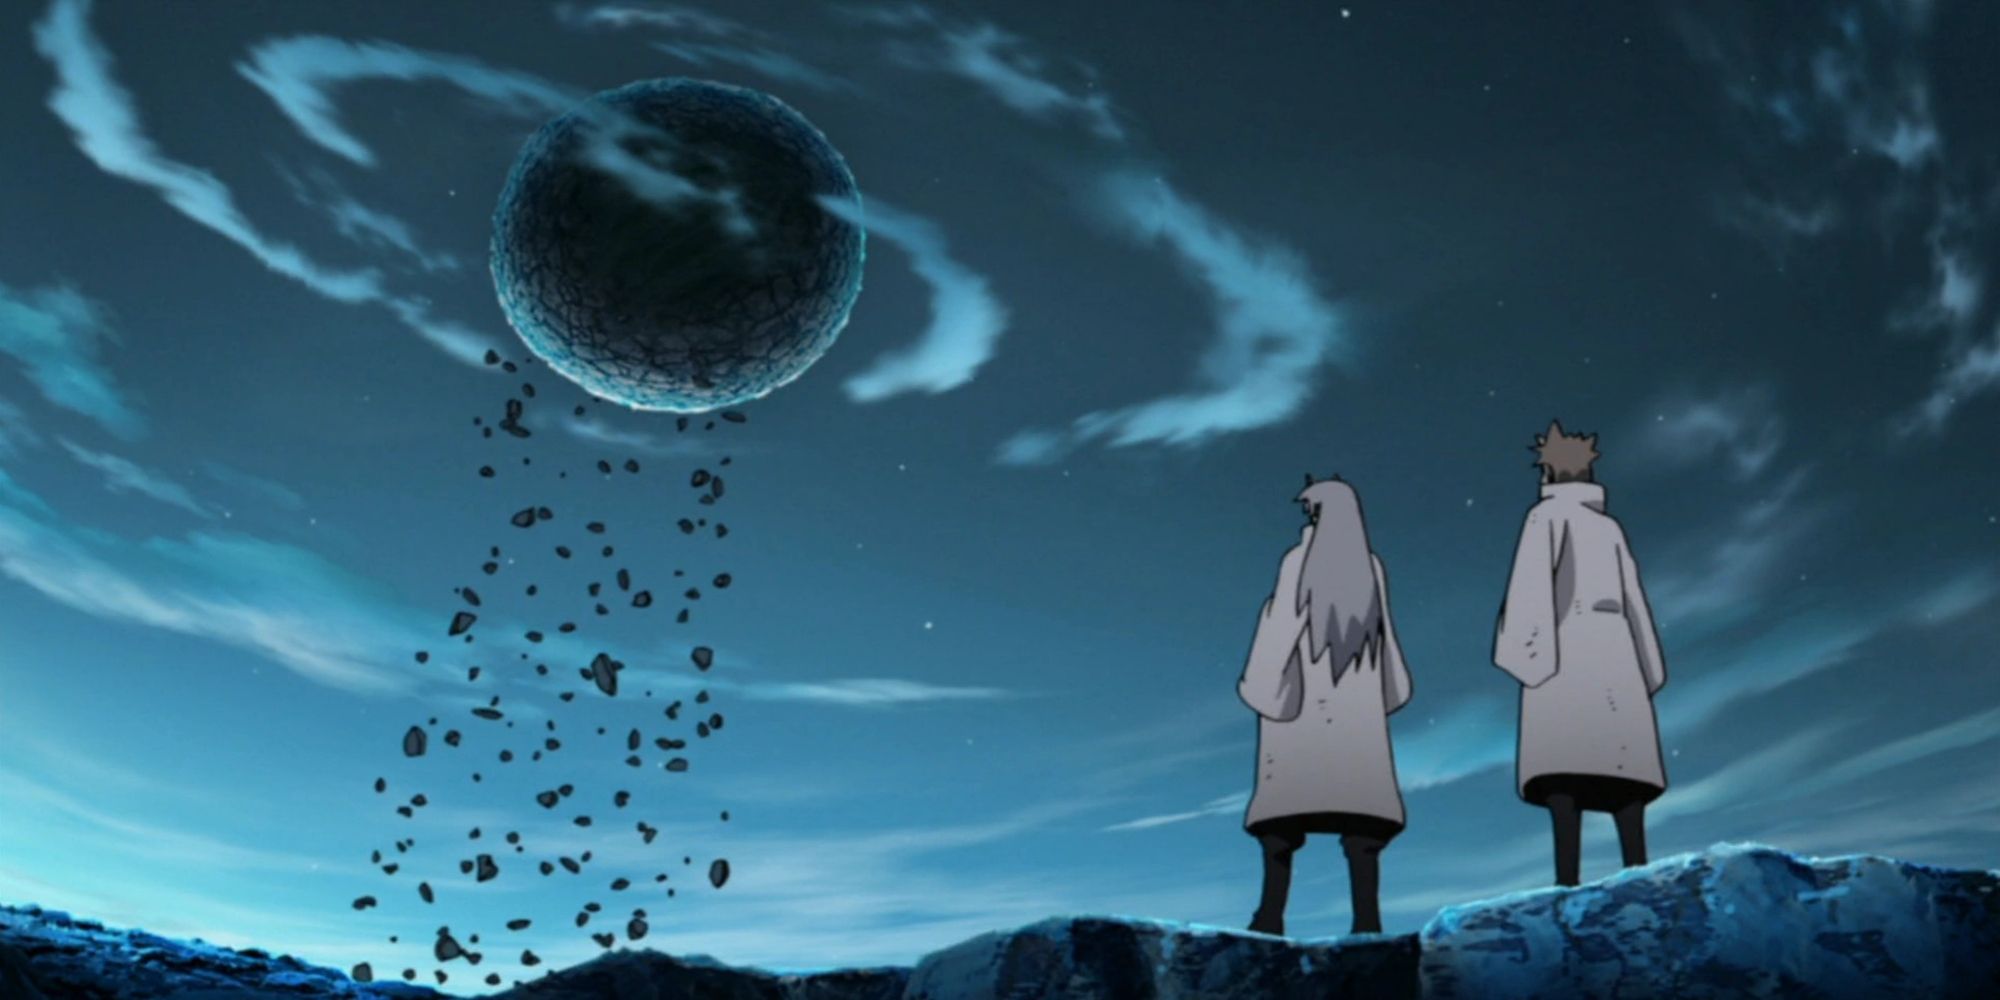 Kaguya Becomes the Moon